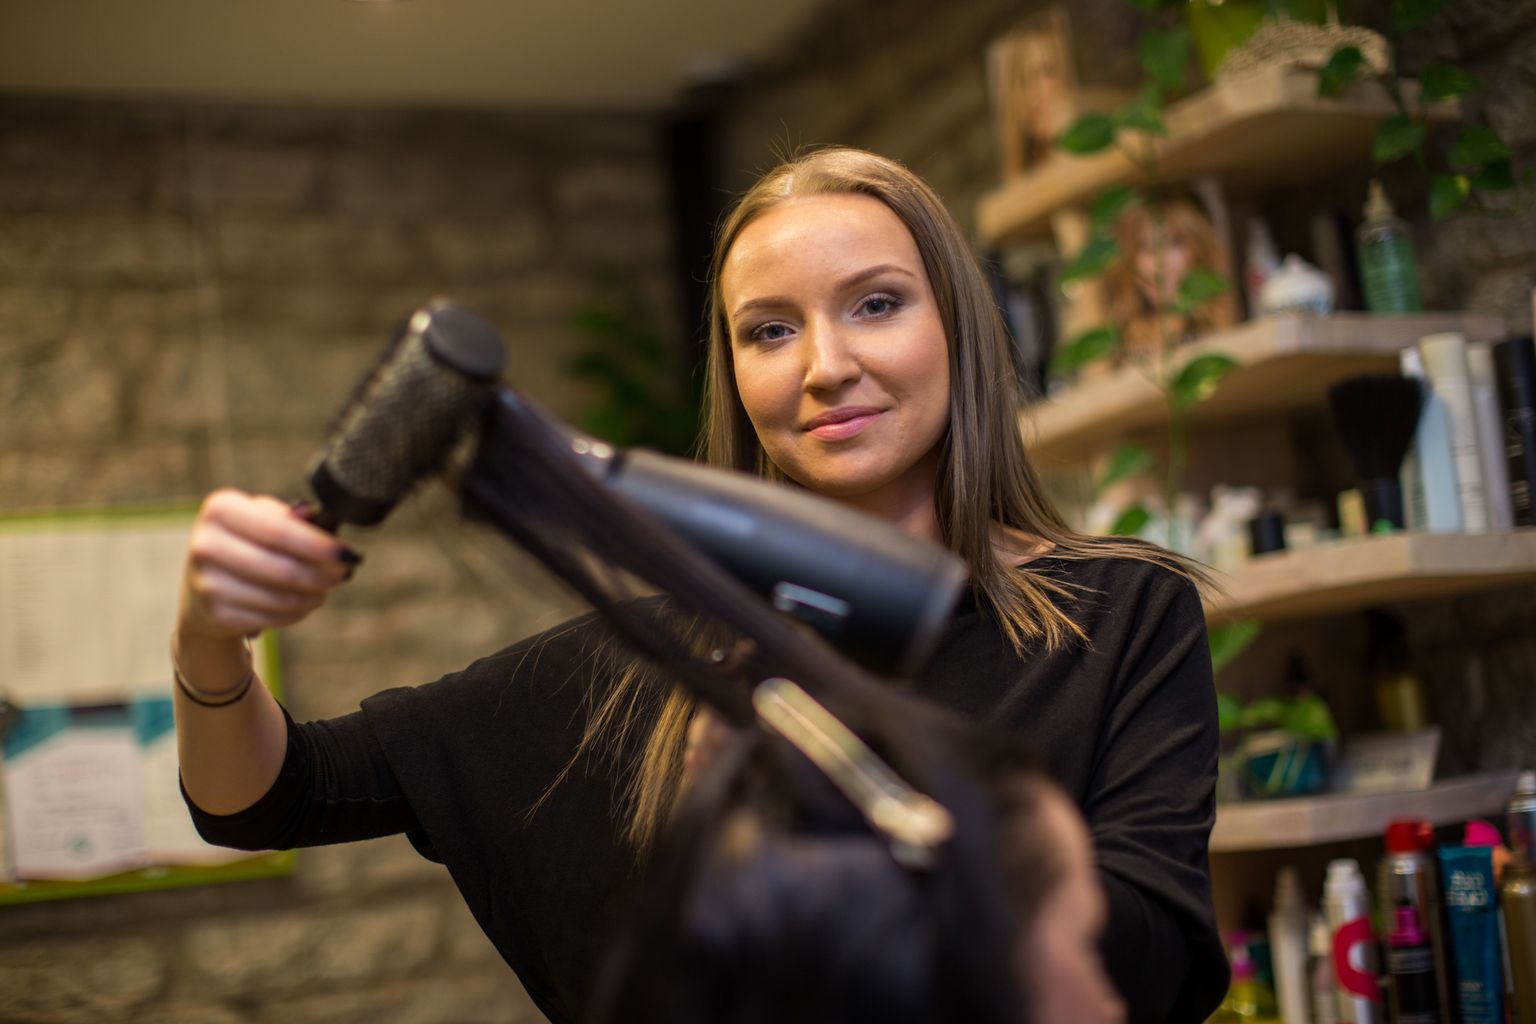 Kui Ketter Orav parasjagu ei laula, töötab ta juuksurina Tallinna vanalinna ilusalongis Iluait. Möödunud aastal osales ta oma elu esimesel juuksurivõistlusel «Noor meister 2015», kus võitis naiste salongilõikuse ja soengusse seadmise kategoorias esikoha.